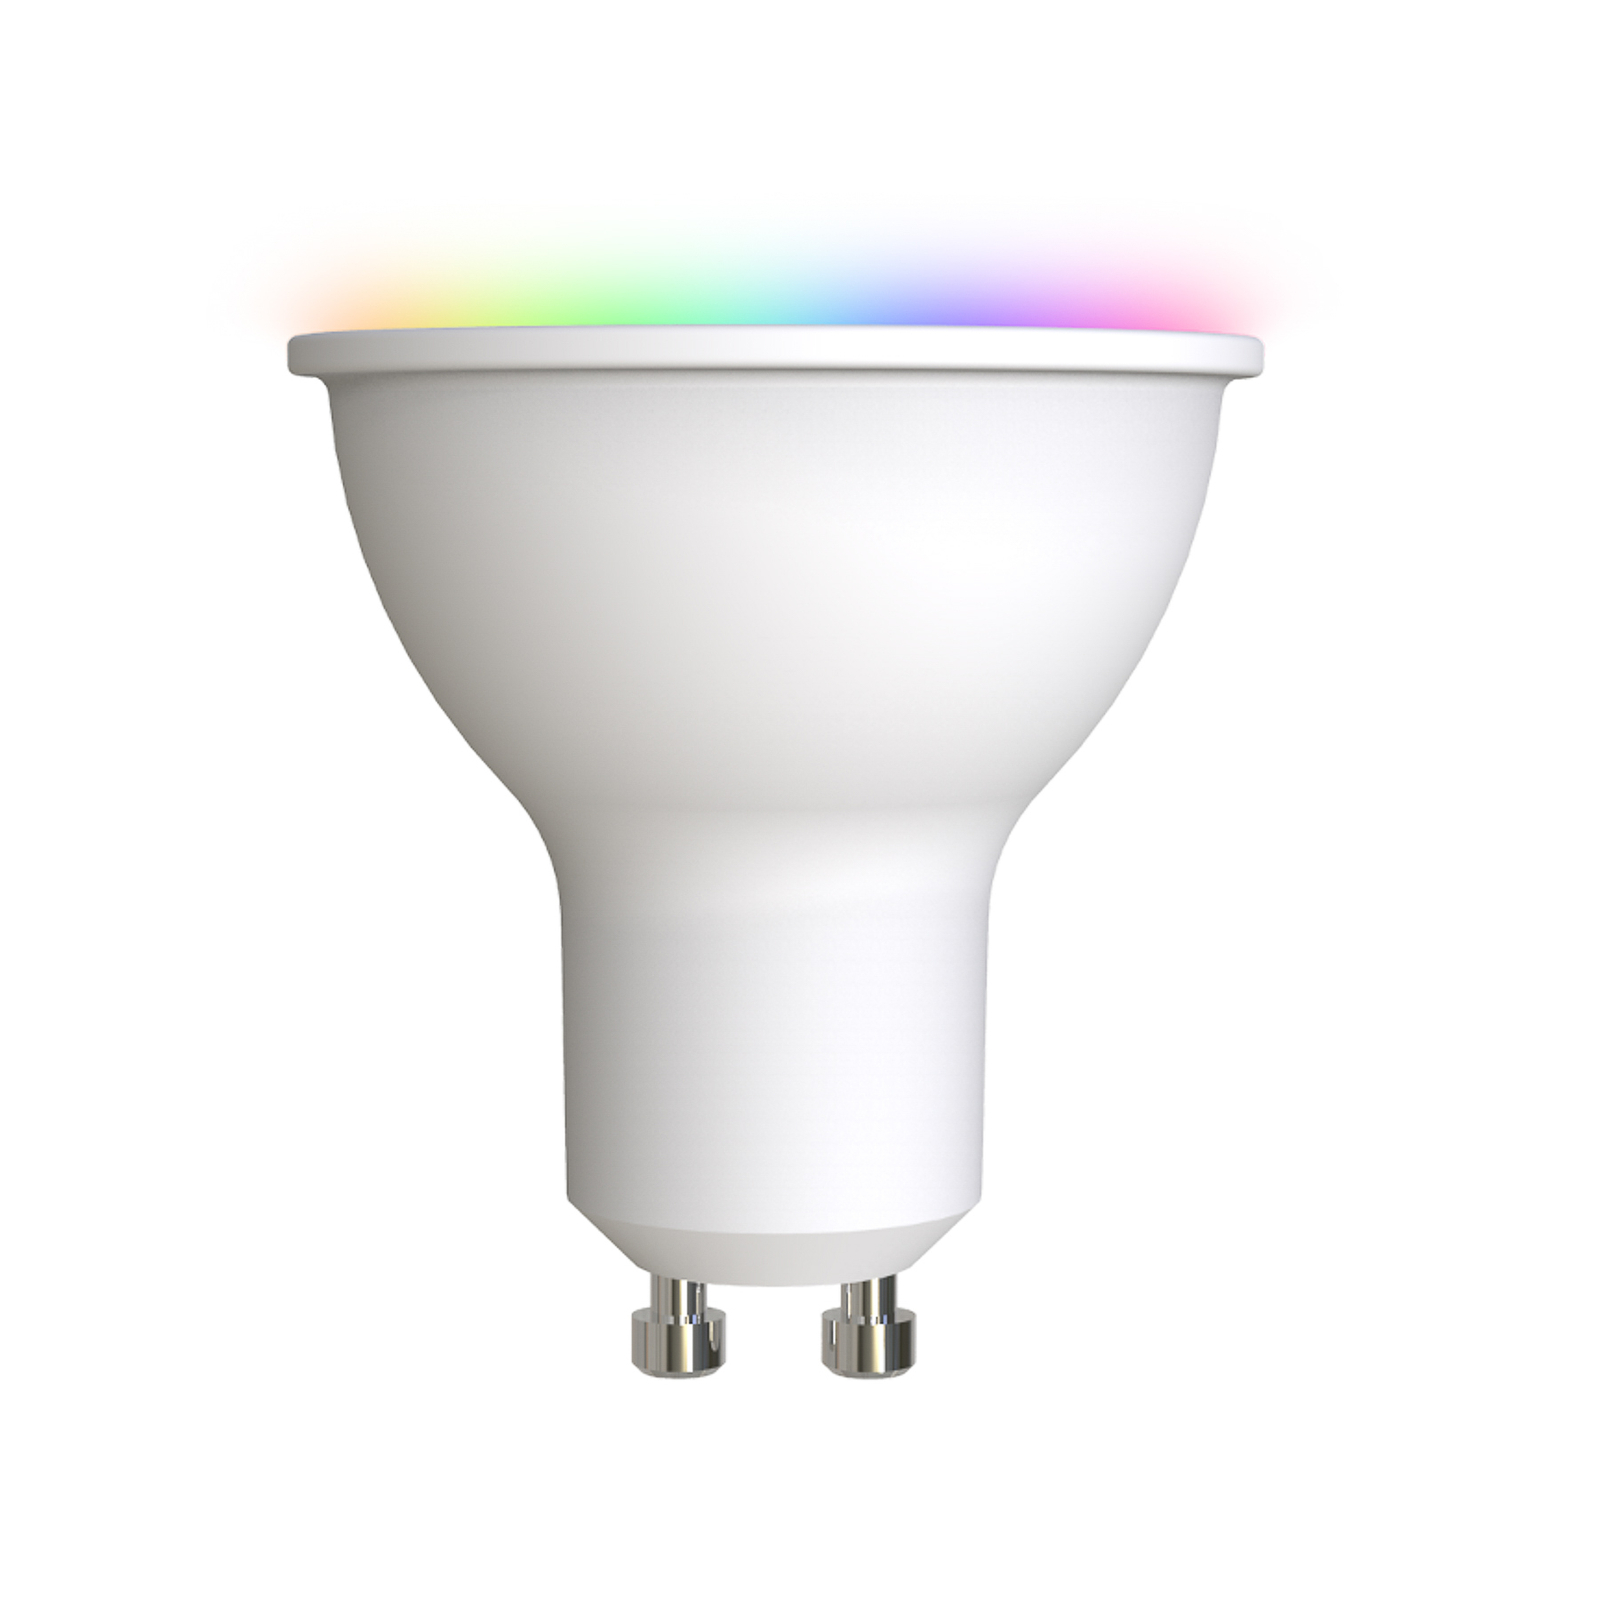 Smart LED-GU10 4,7W RGBW WLAN satin tunable white